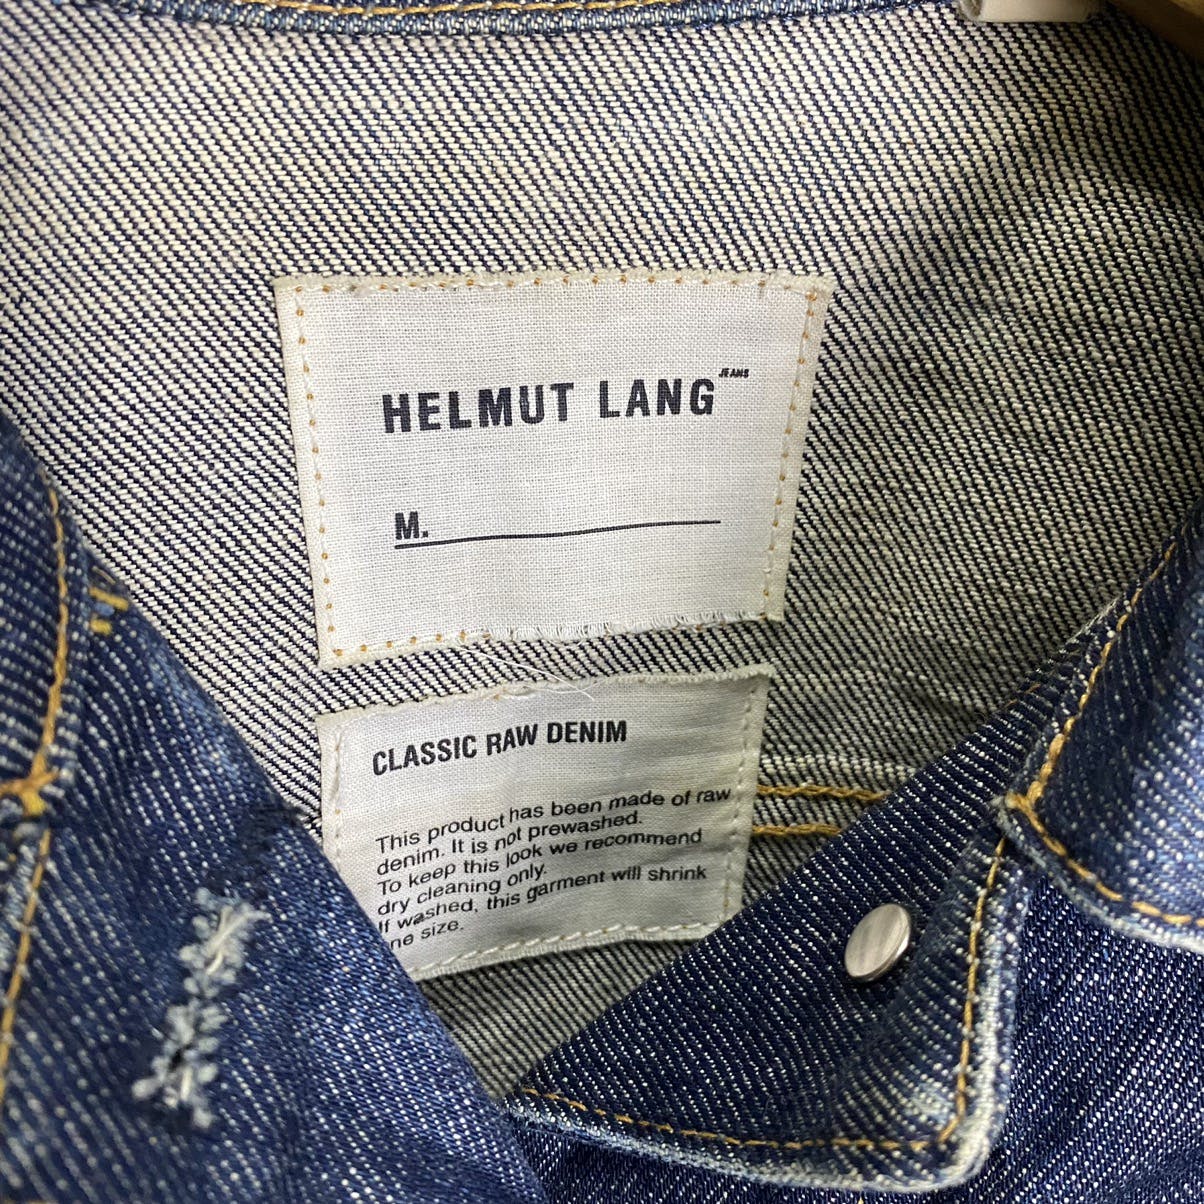 Helmut Lang Denim Jacket - 11